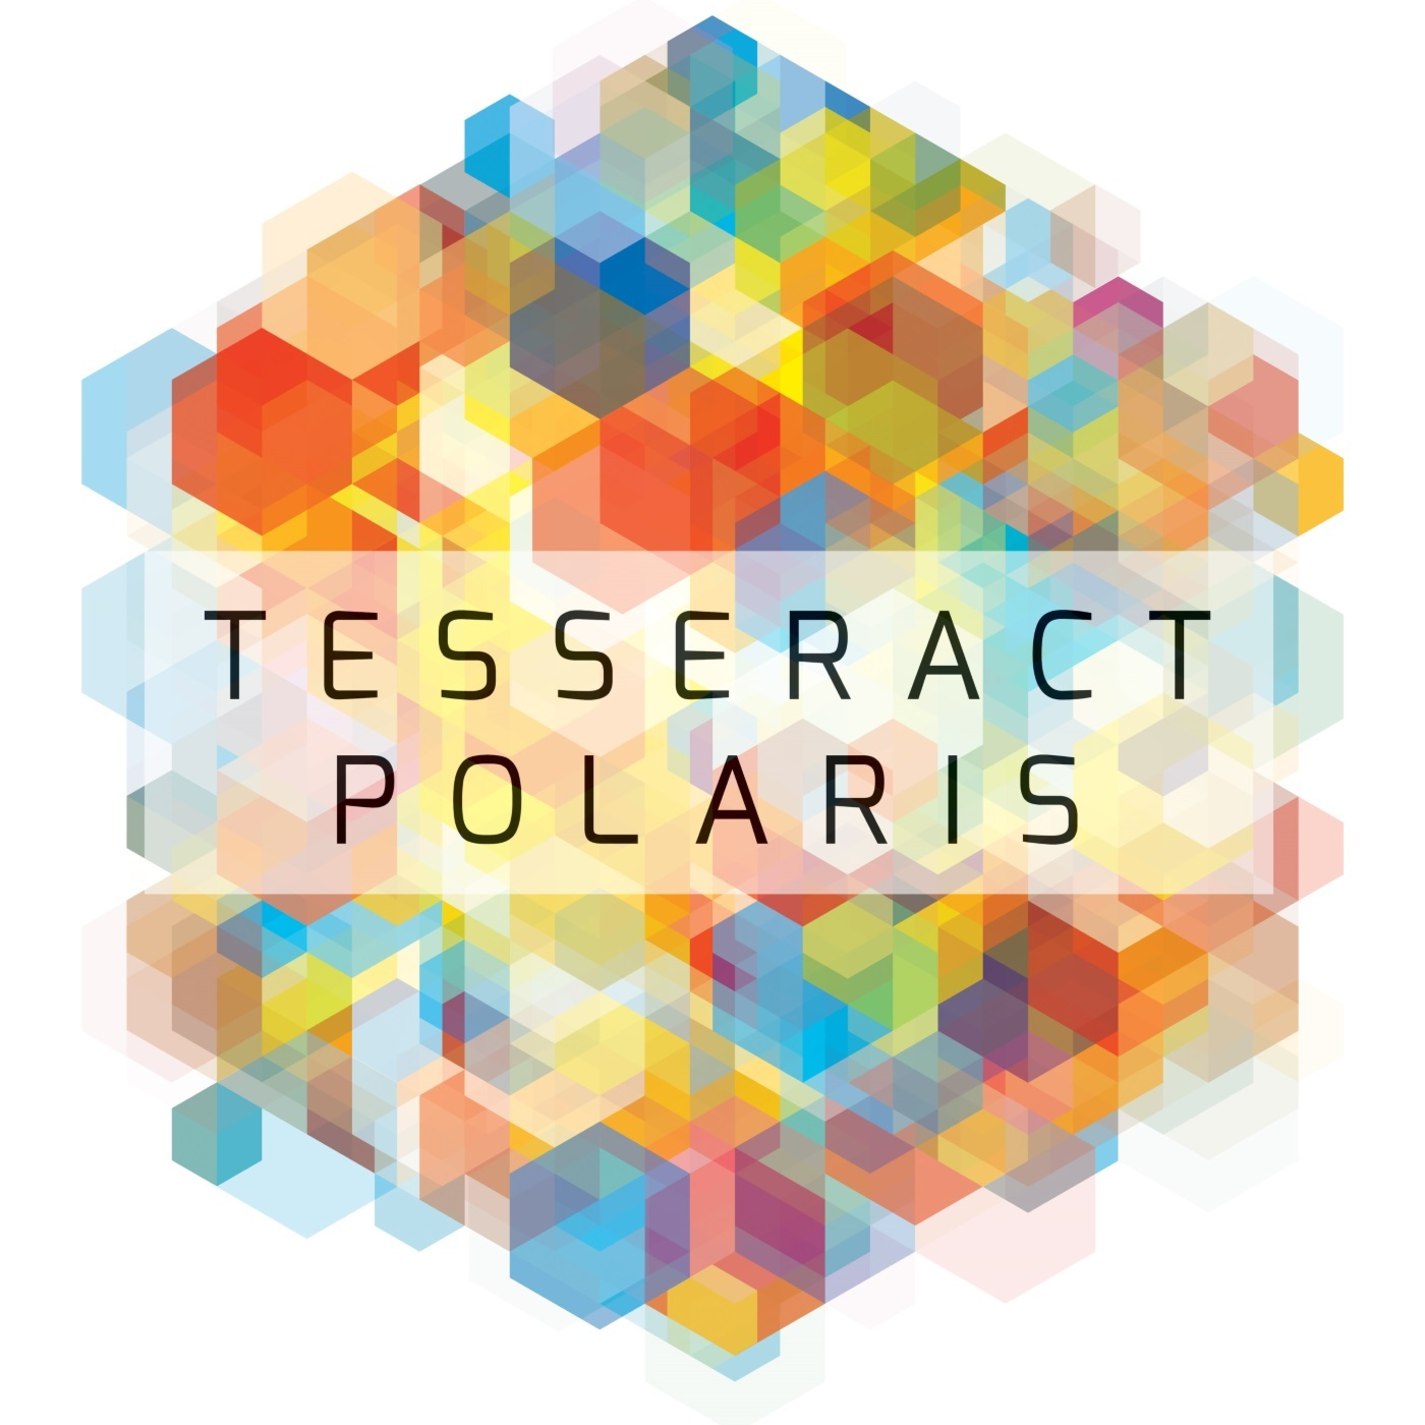 TesseracT: Polaris